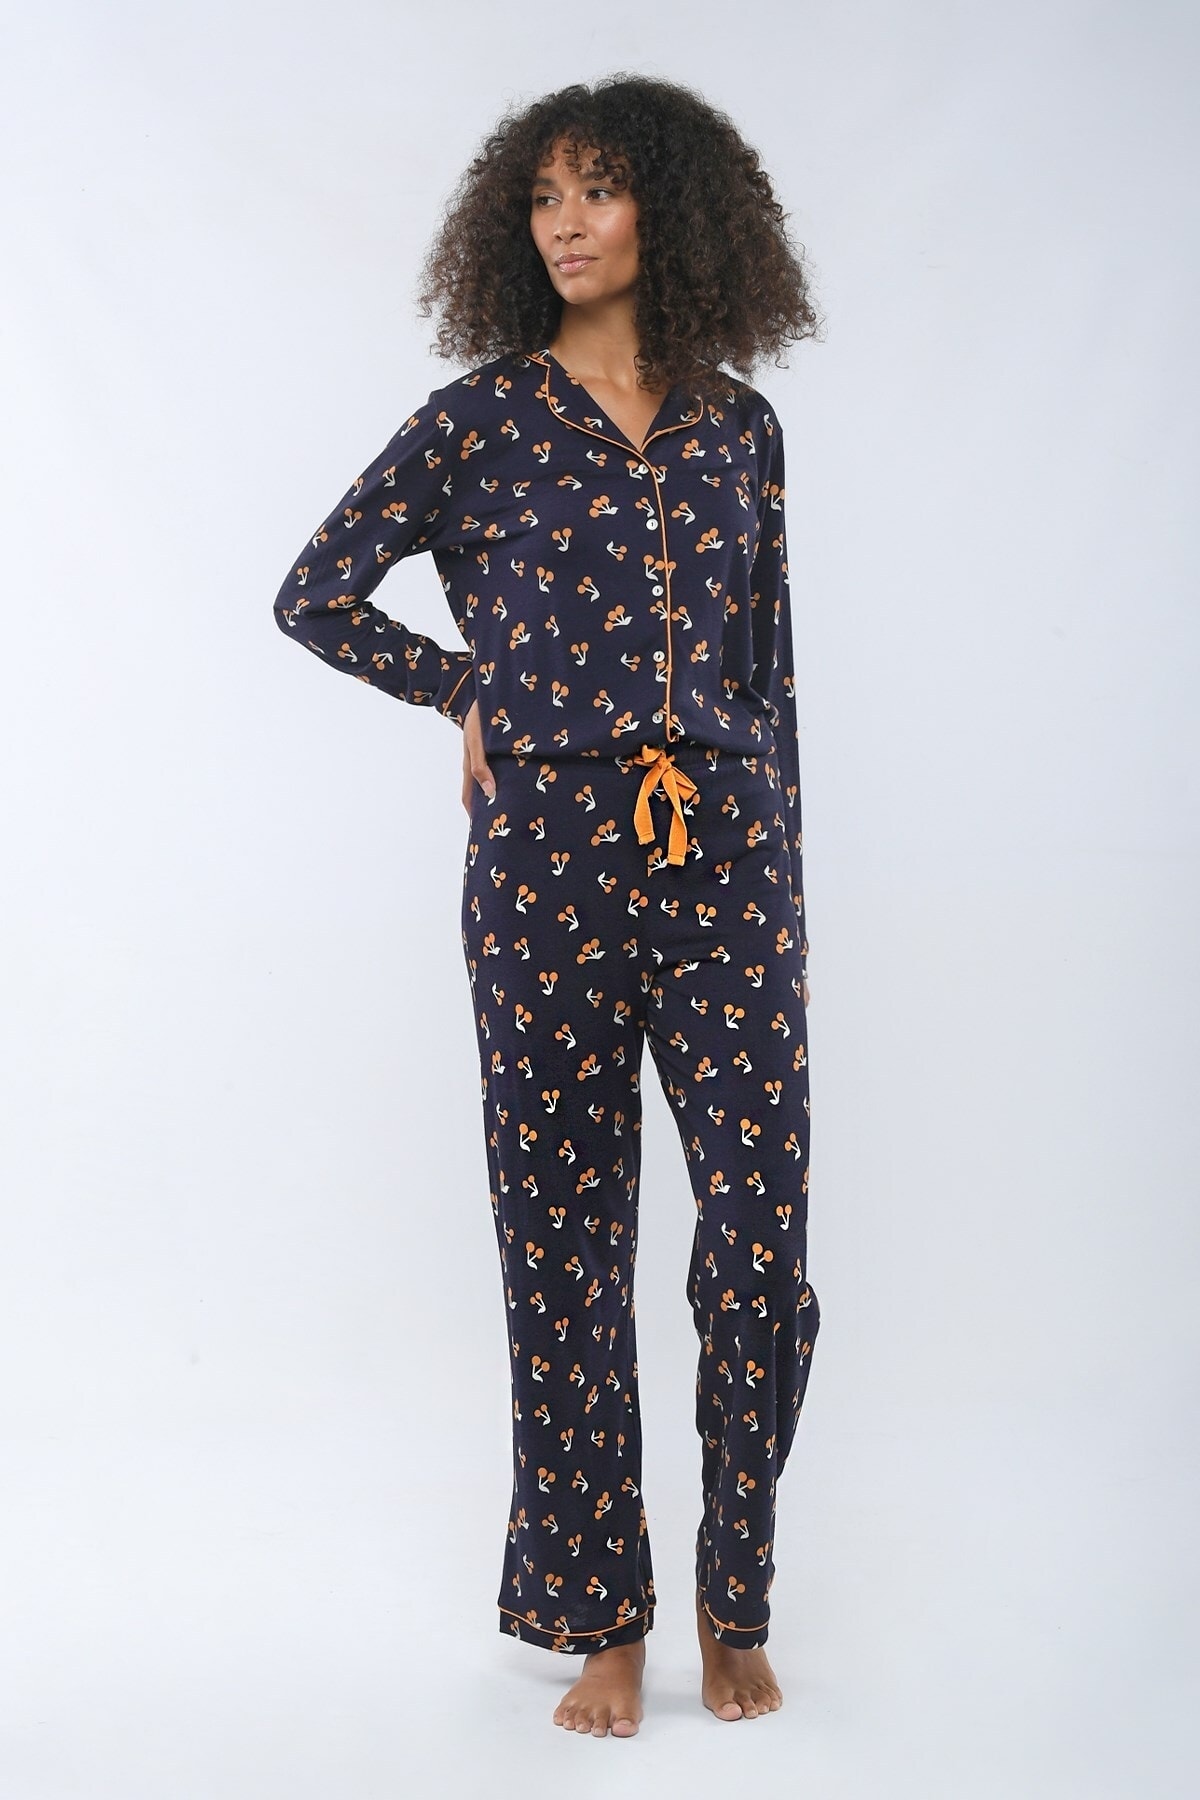 Katia&Bony Pyjama Dunkelblau Print Fast ausverkauft